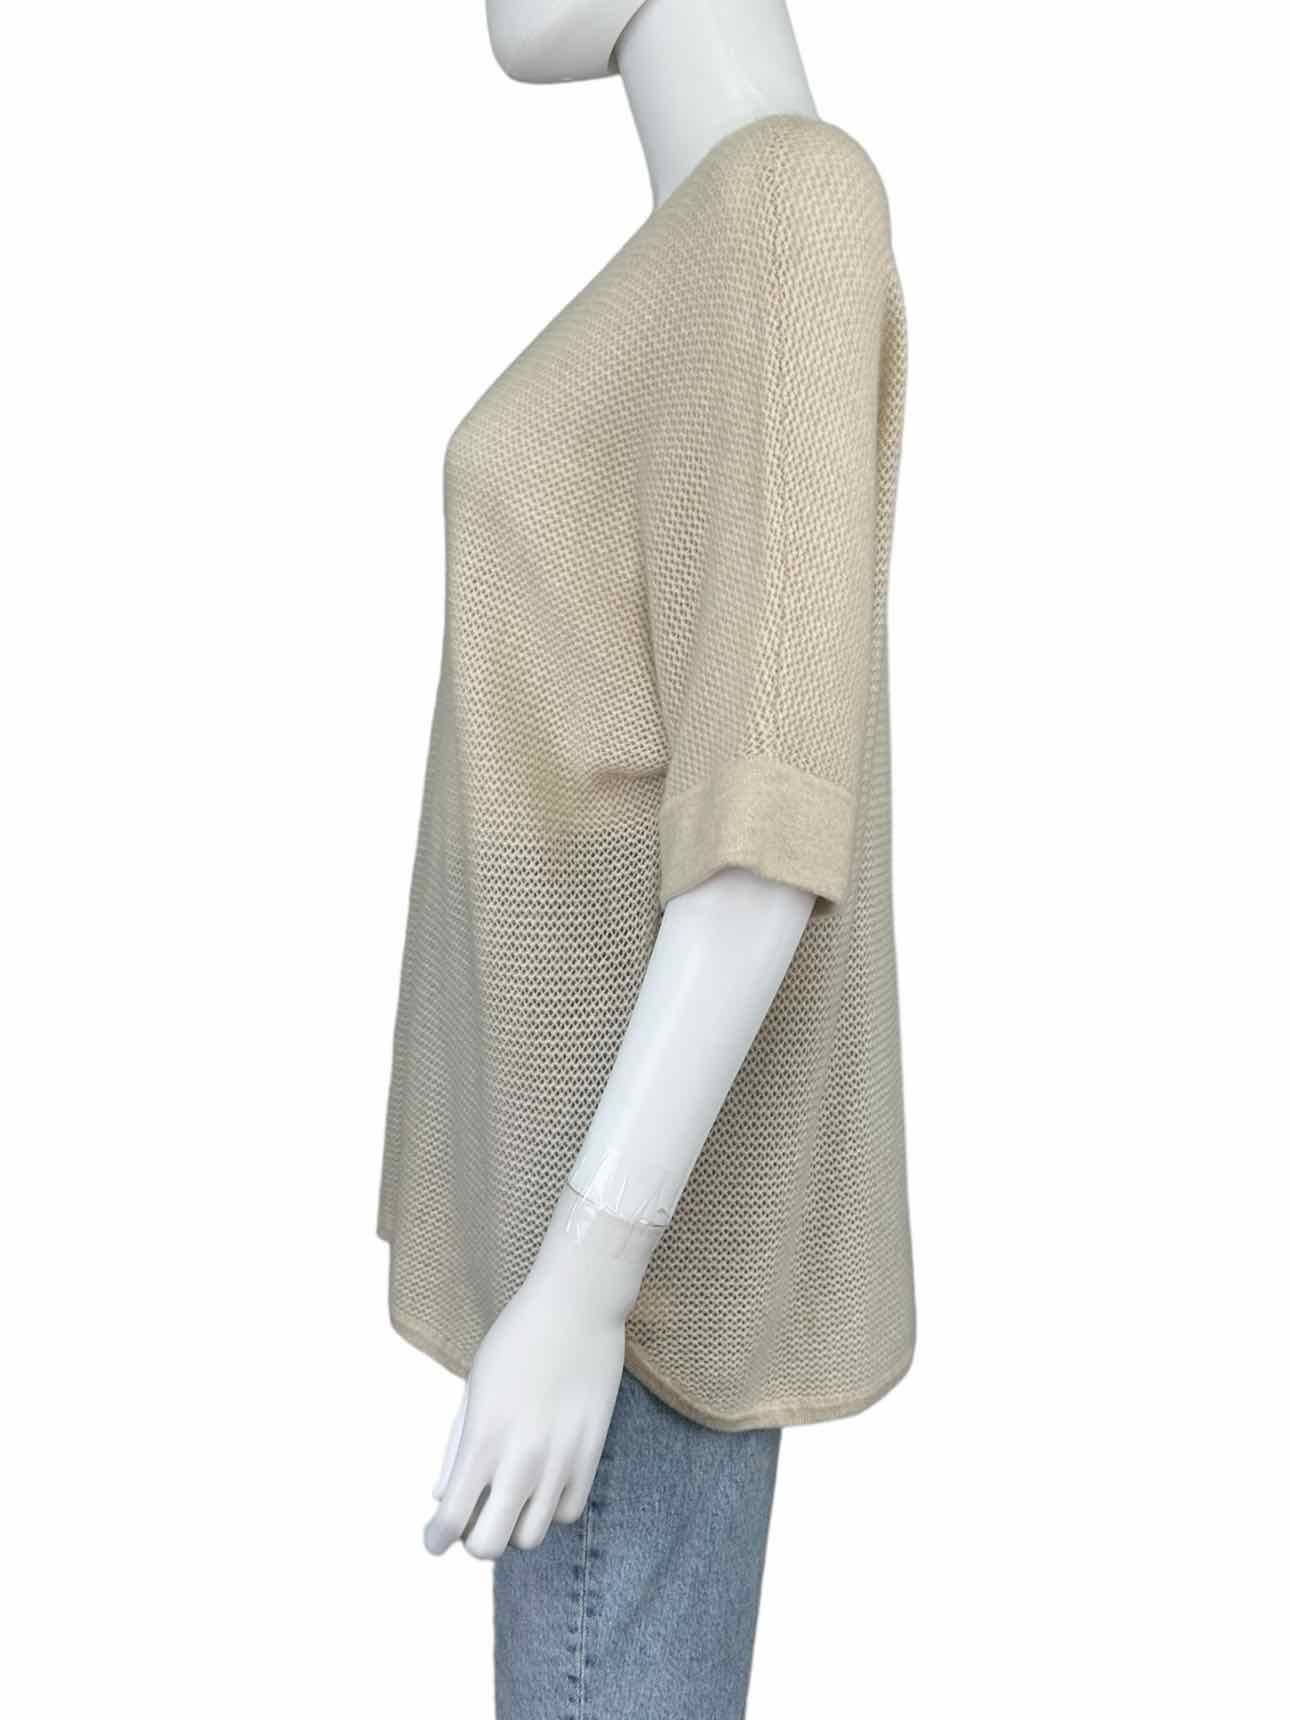 WHITE + WARREN Beige 100% Cashmere Sweater Size L